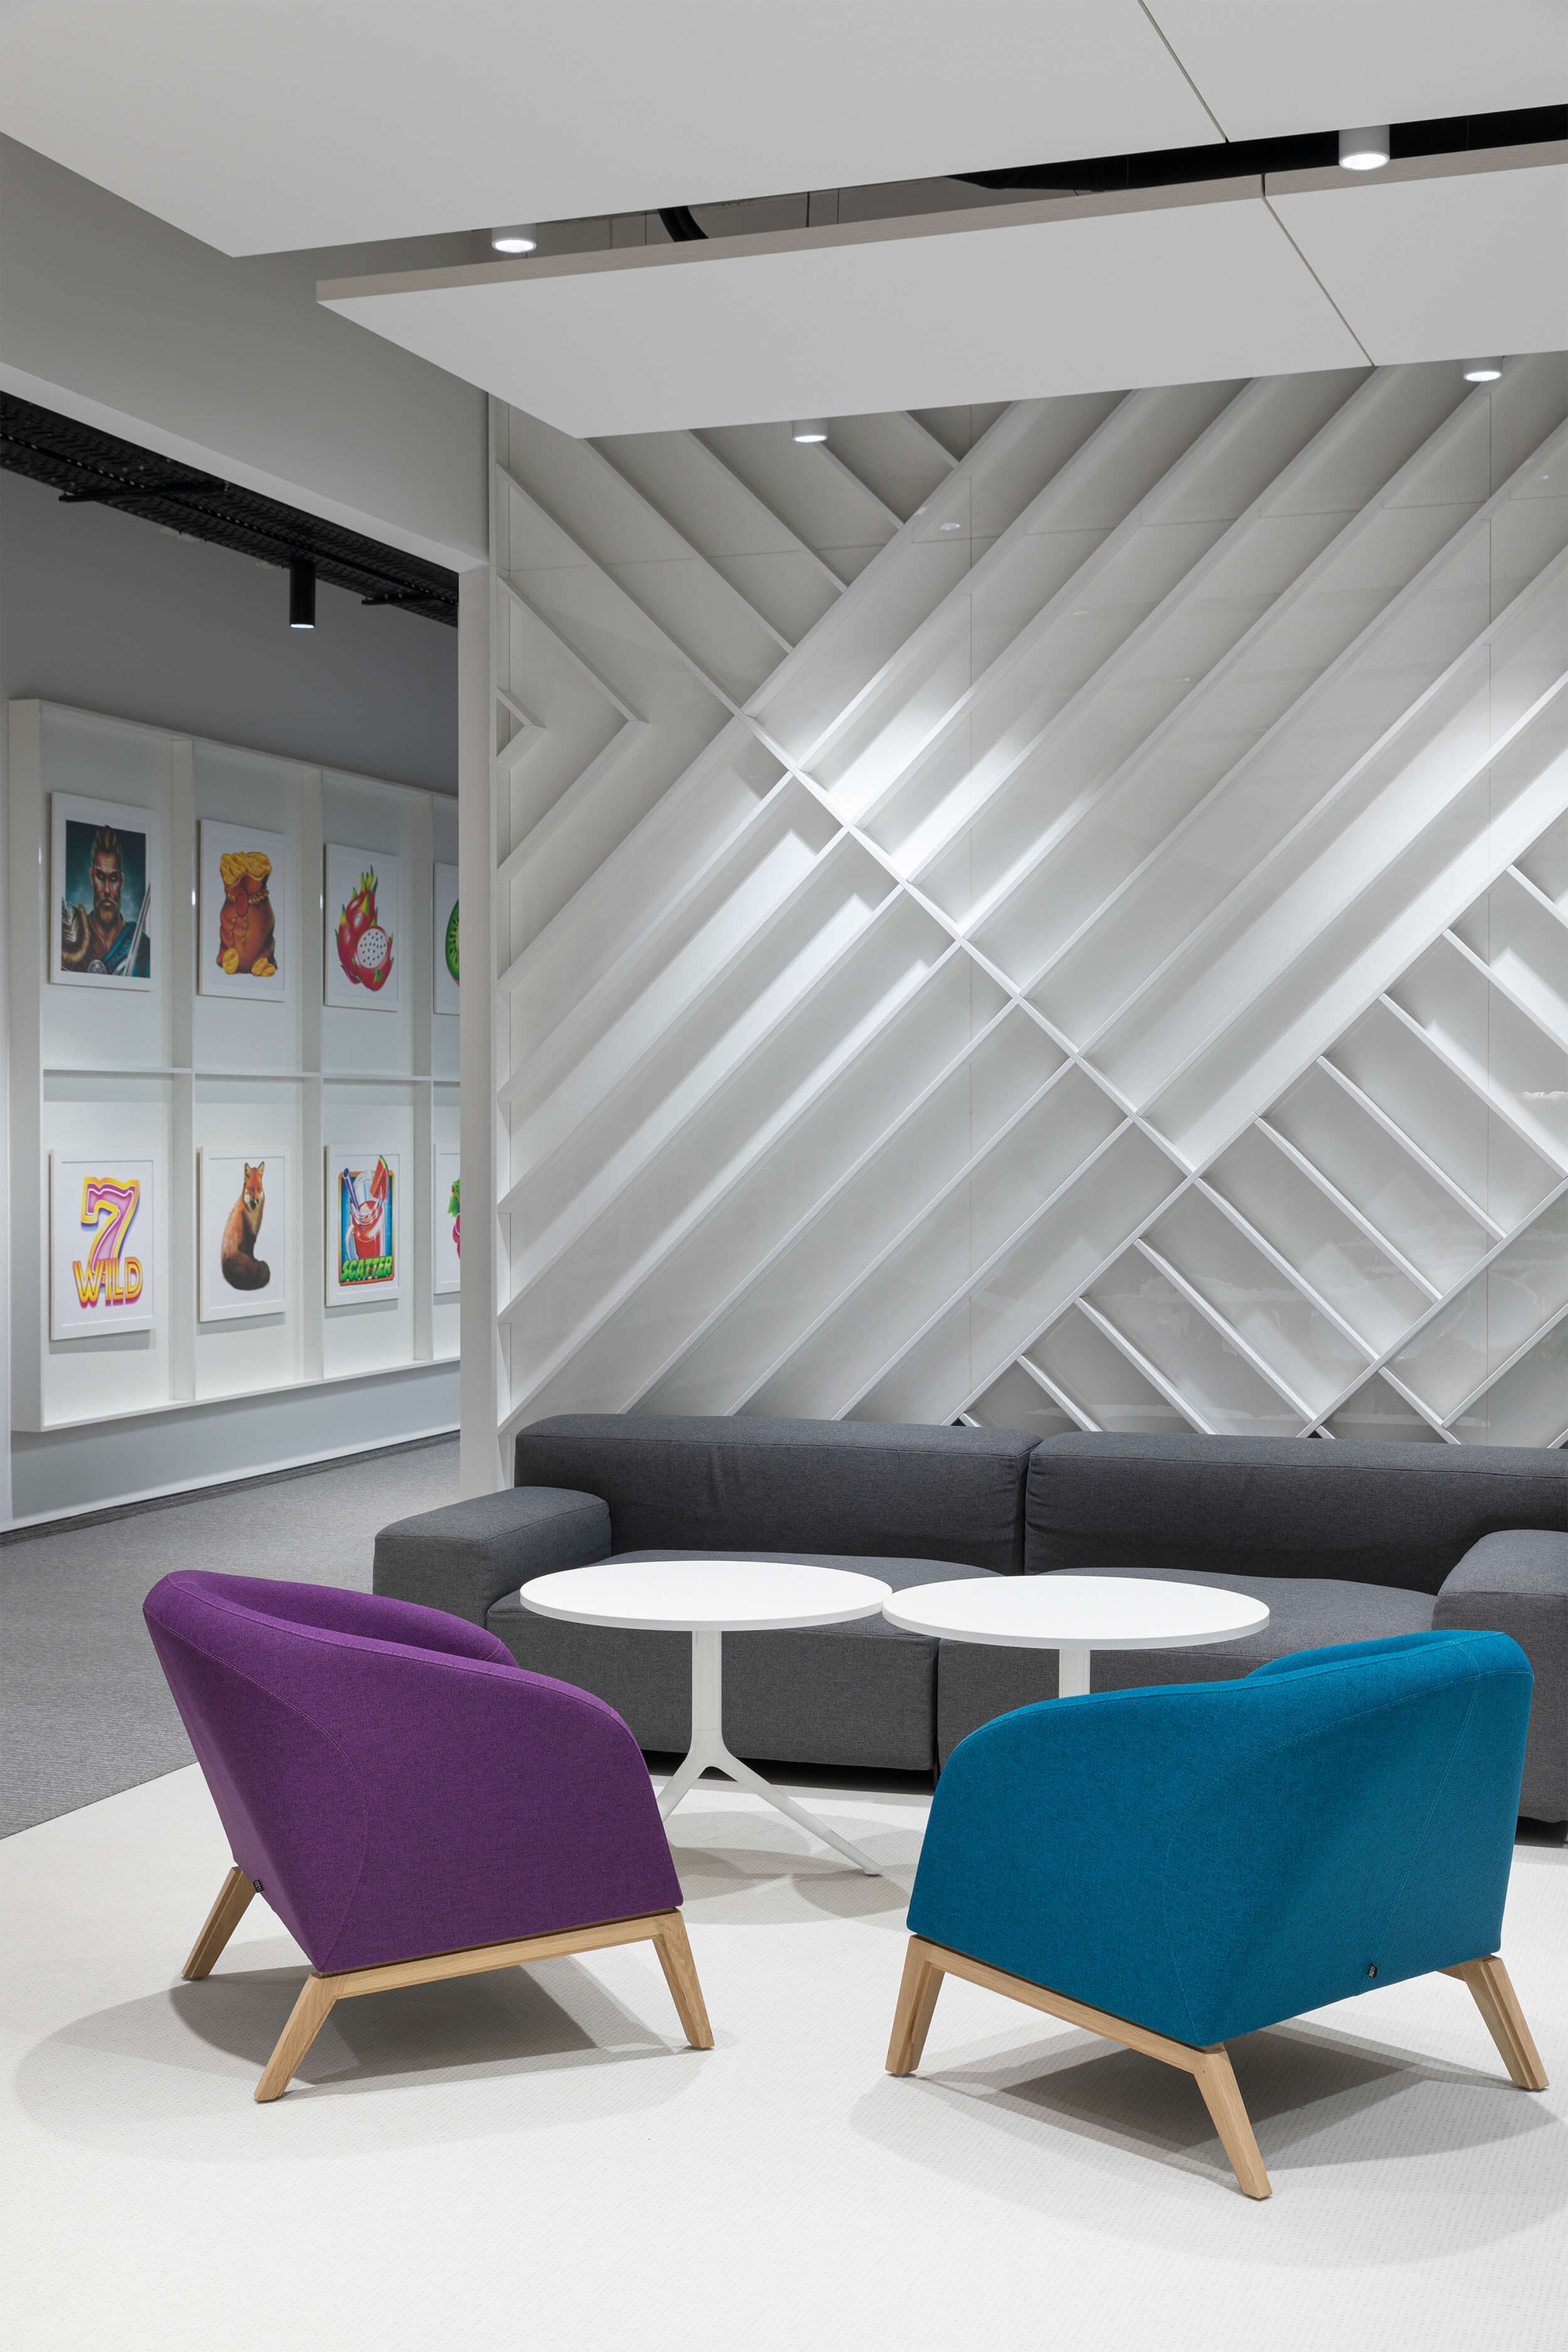 图片[20]|Amusnet办公室——索菲亚|ART-Arrakis | 建筑室内设计的创新与灵感